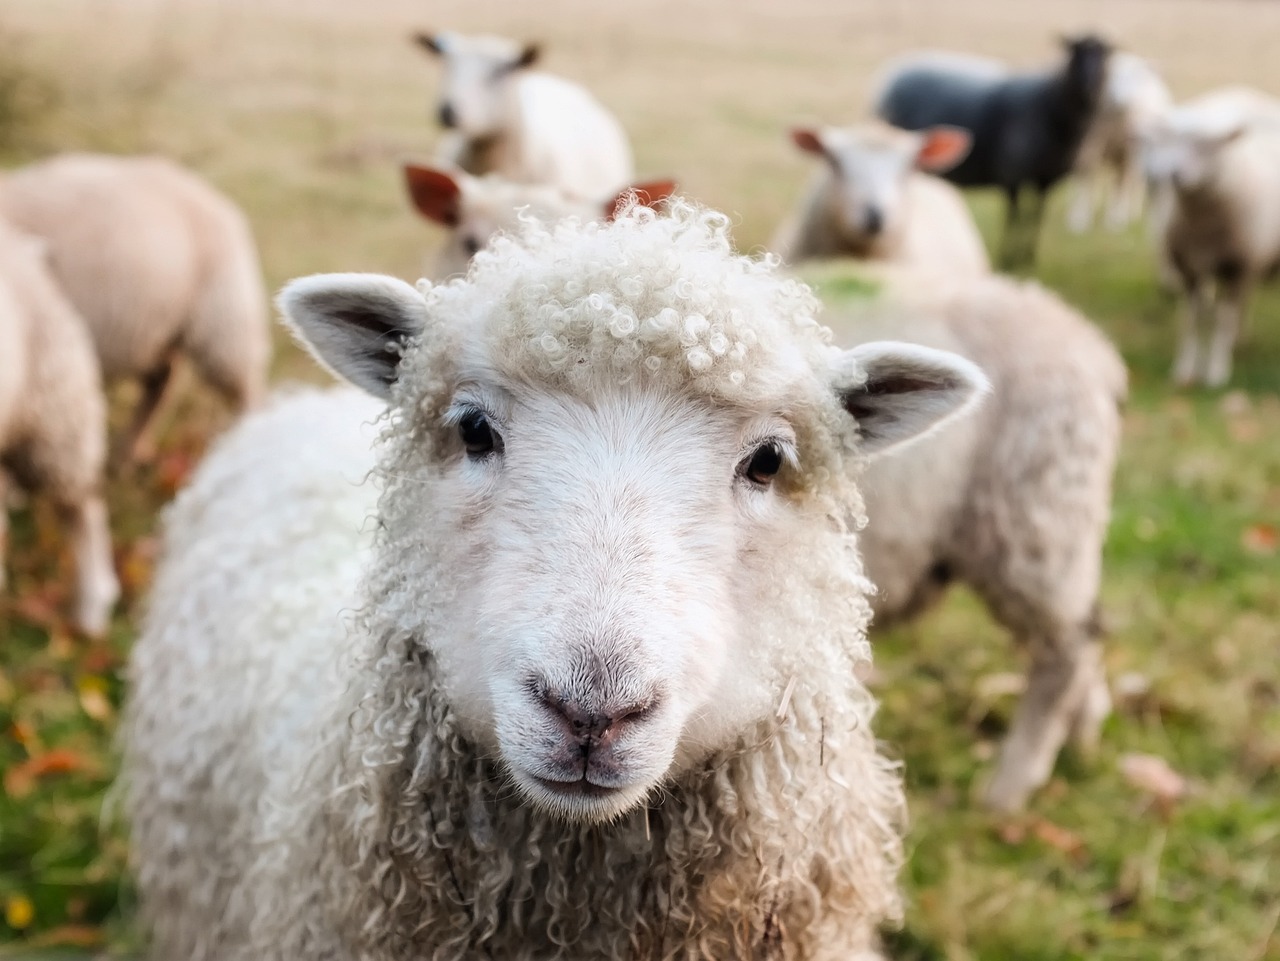 schapen-in-de-wei-met-1-schaap-kijkt-in-camera